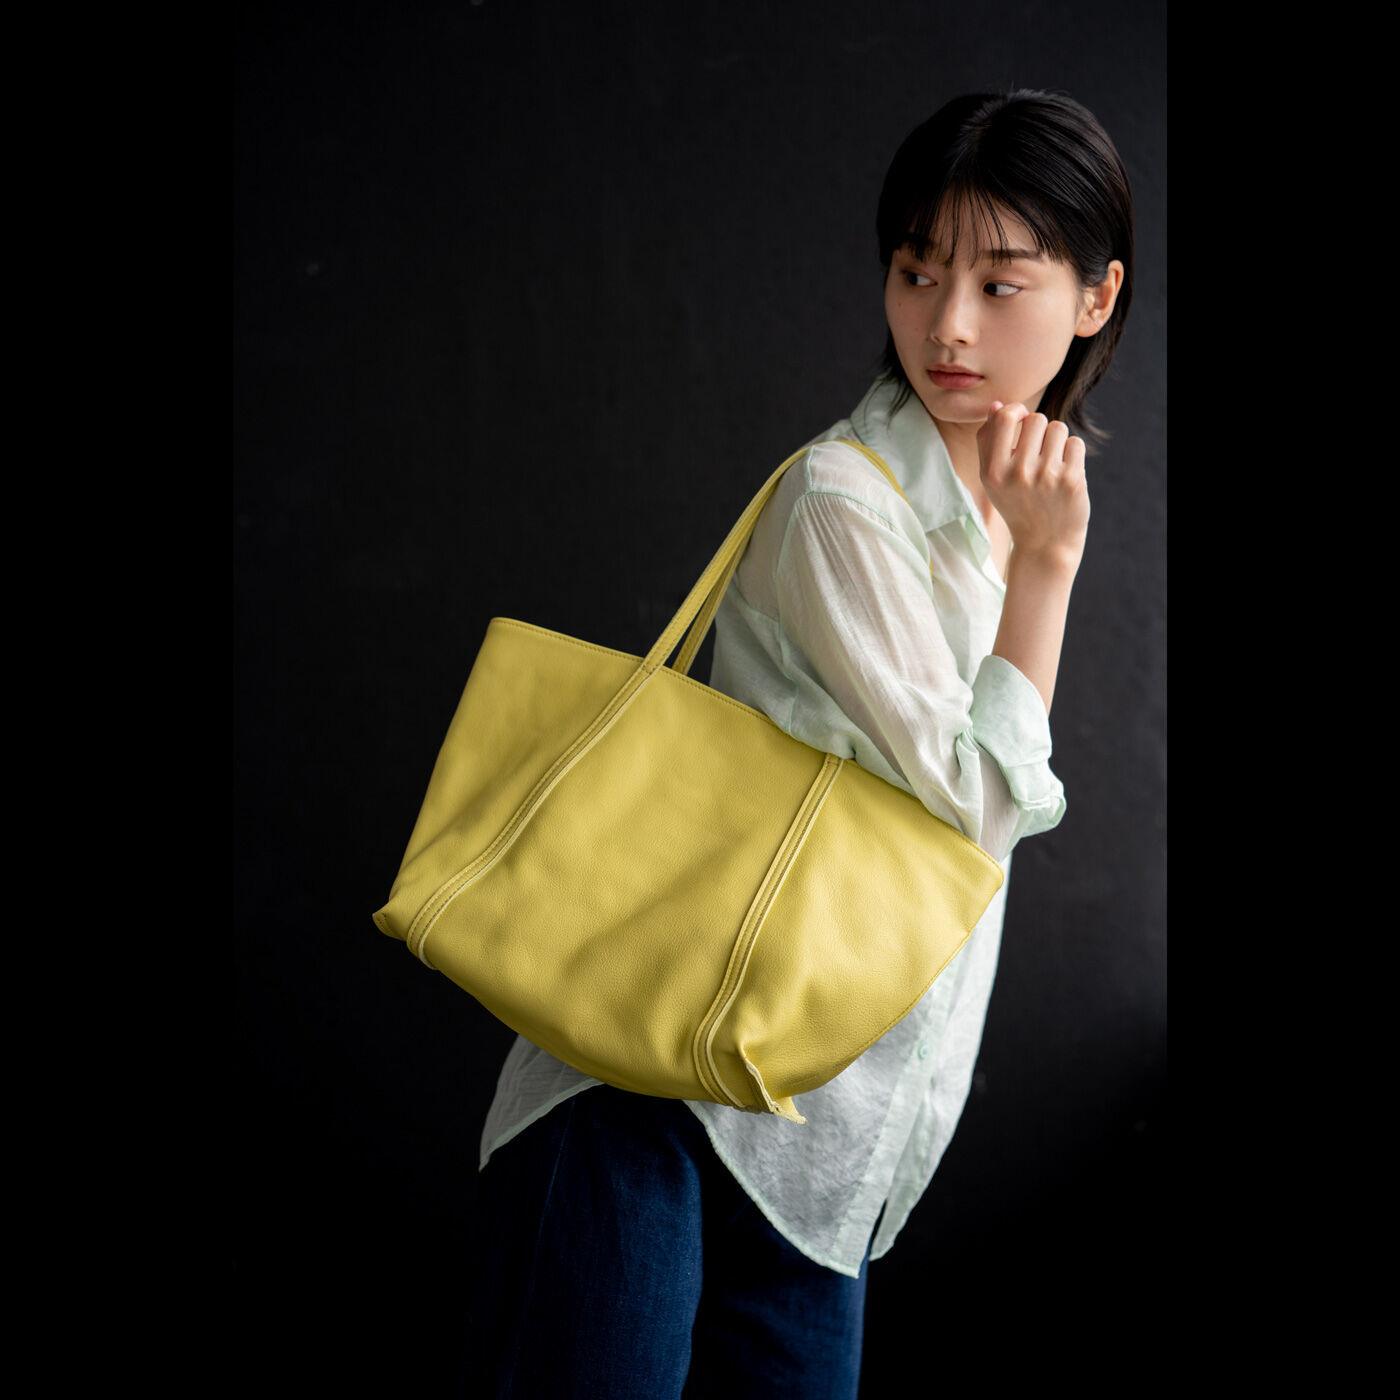 ＆Stories|福岡の鞄作家と作った 職人本革のトゥーシーンバッグ〈ライムイエロー〉|革をこよなく愛する福岡の鞄作家・岡政孝さんが手がけた、ふんわりやわらかなレザーを贅沢に使ったバッグ。